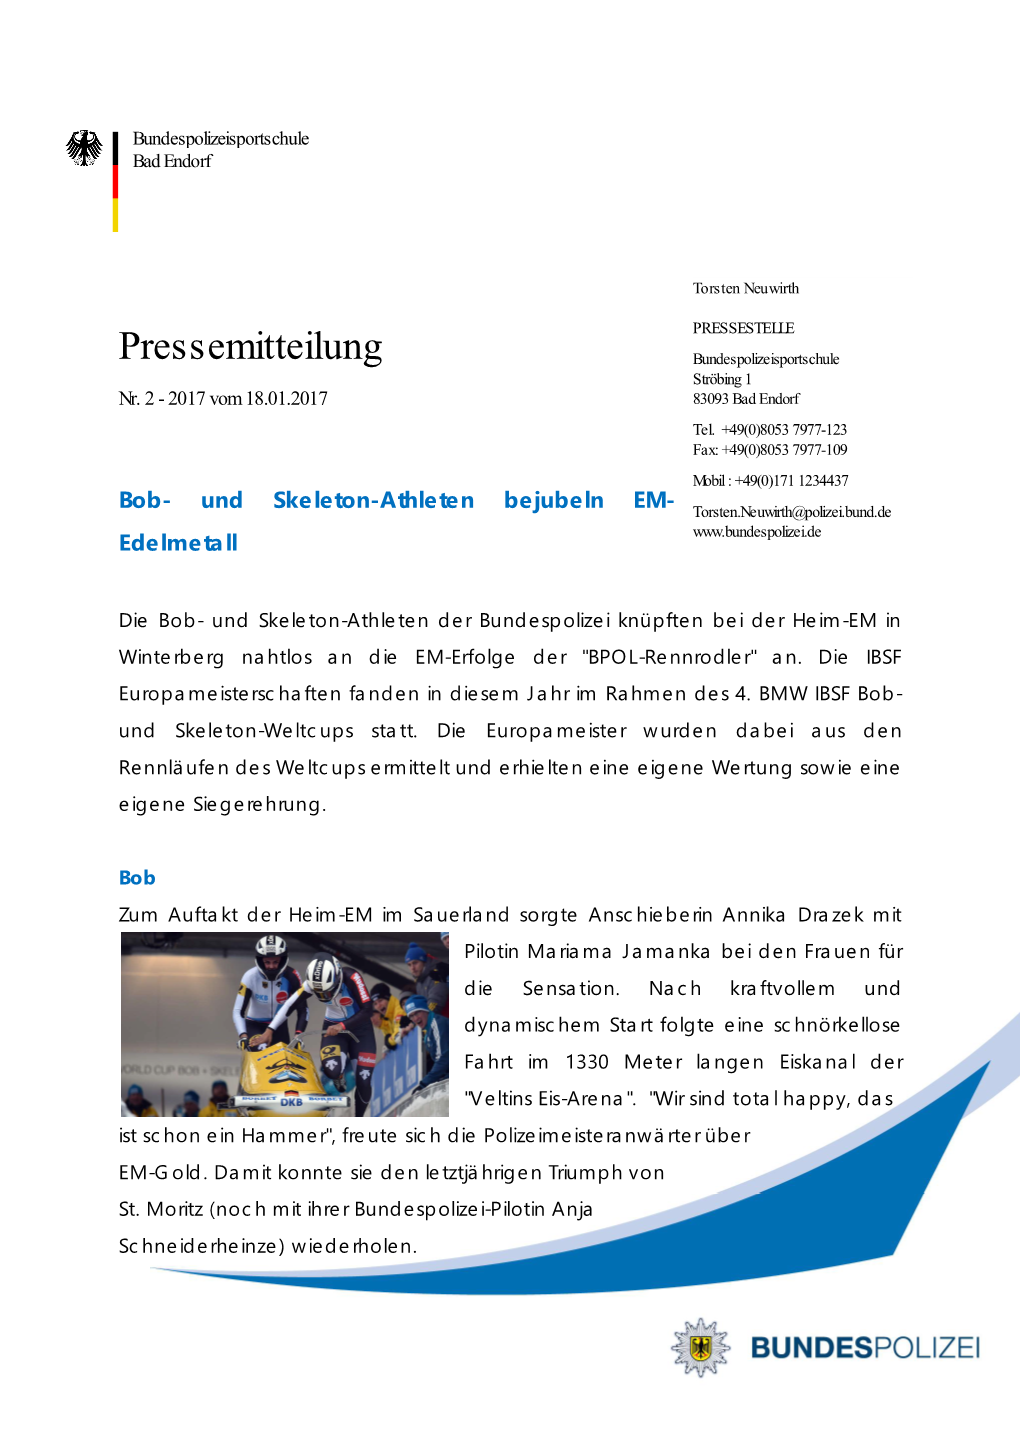 Pressemitteilung Bundespolizeisportschule Ströbing 1 Nr